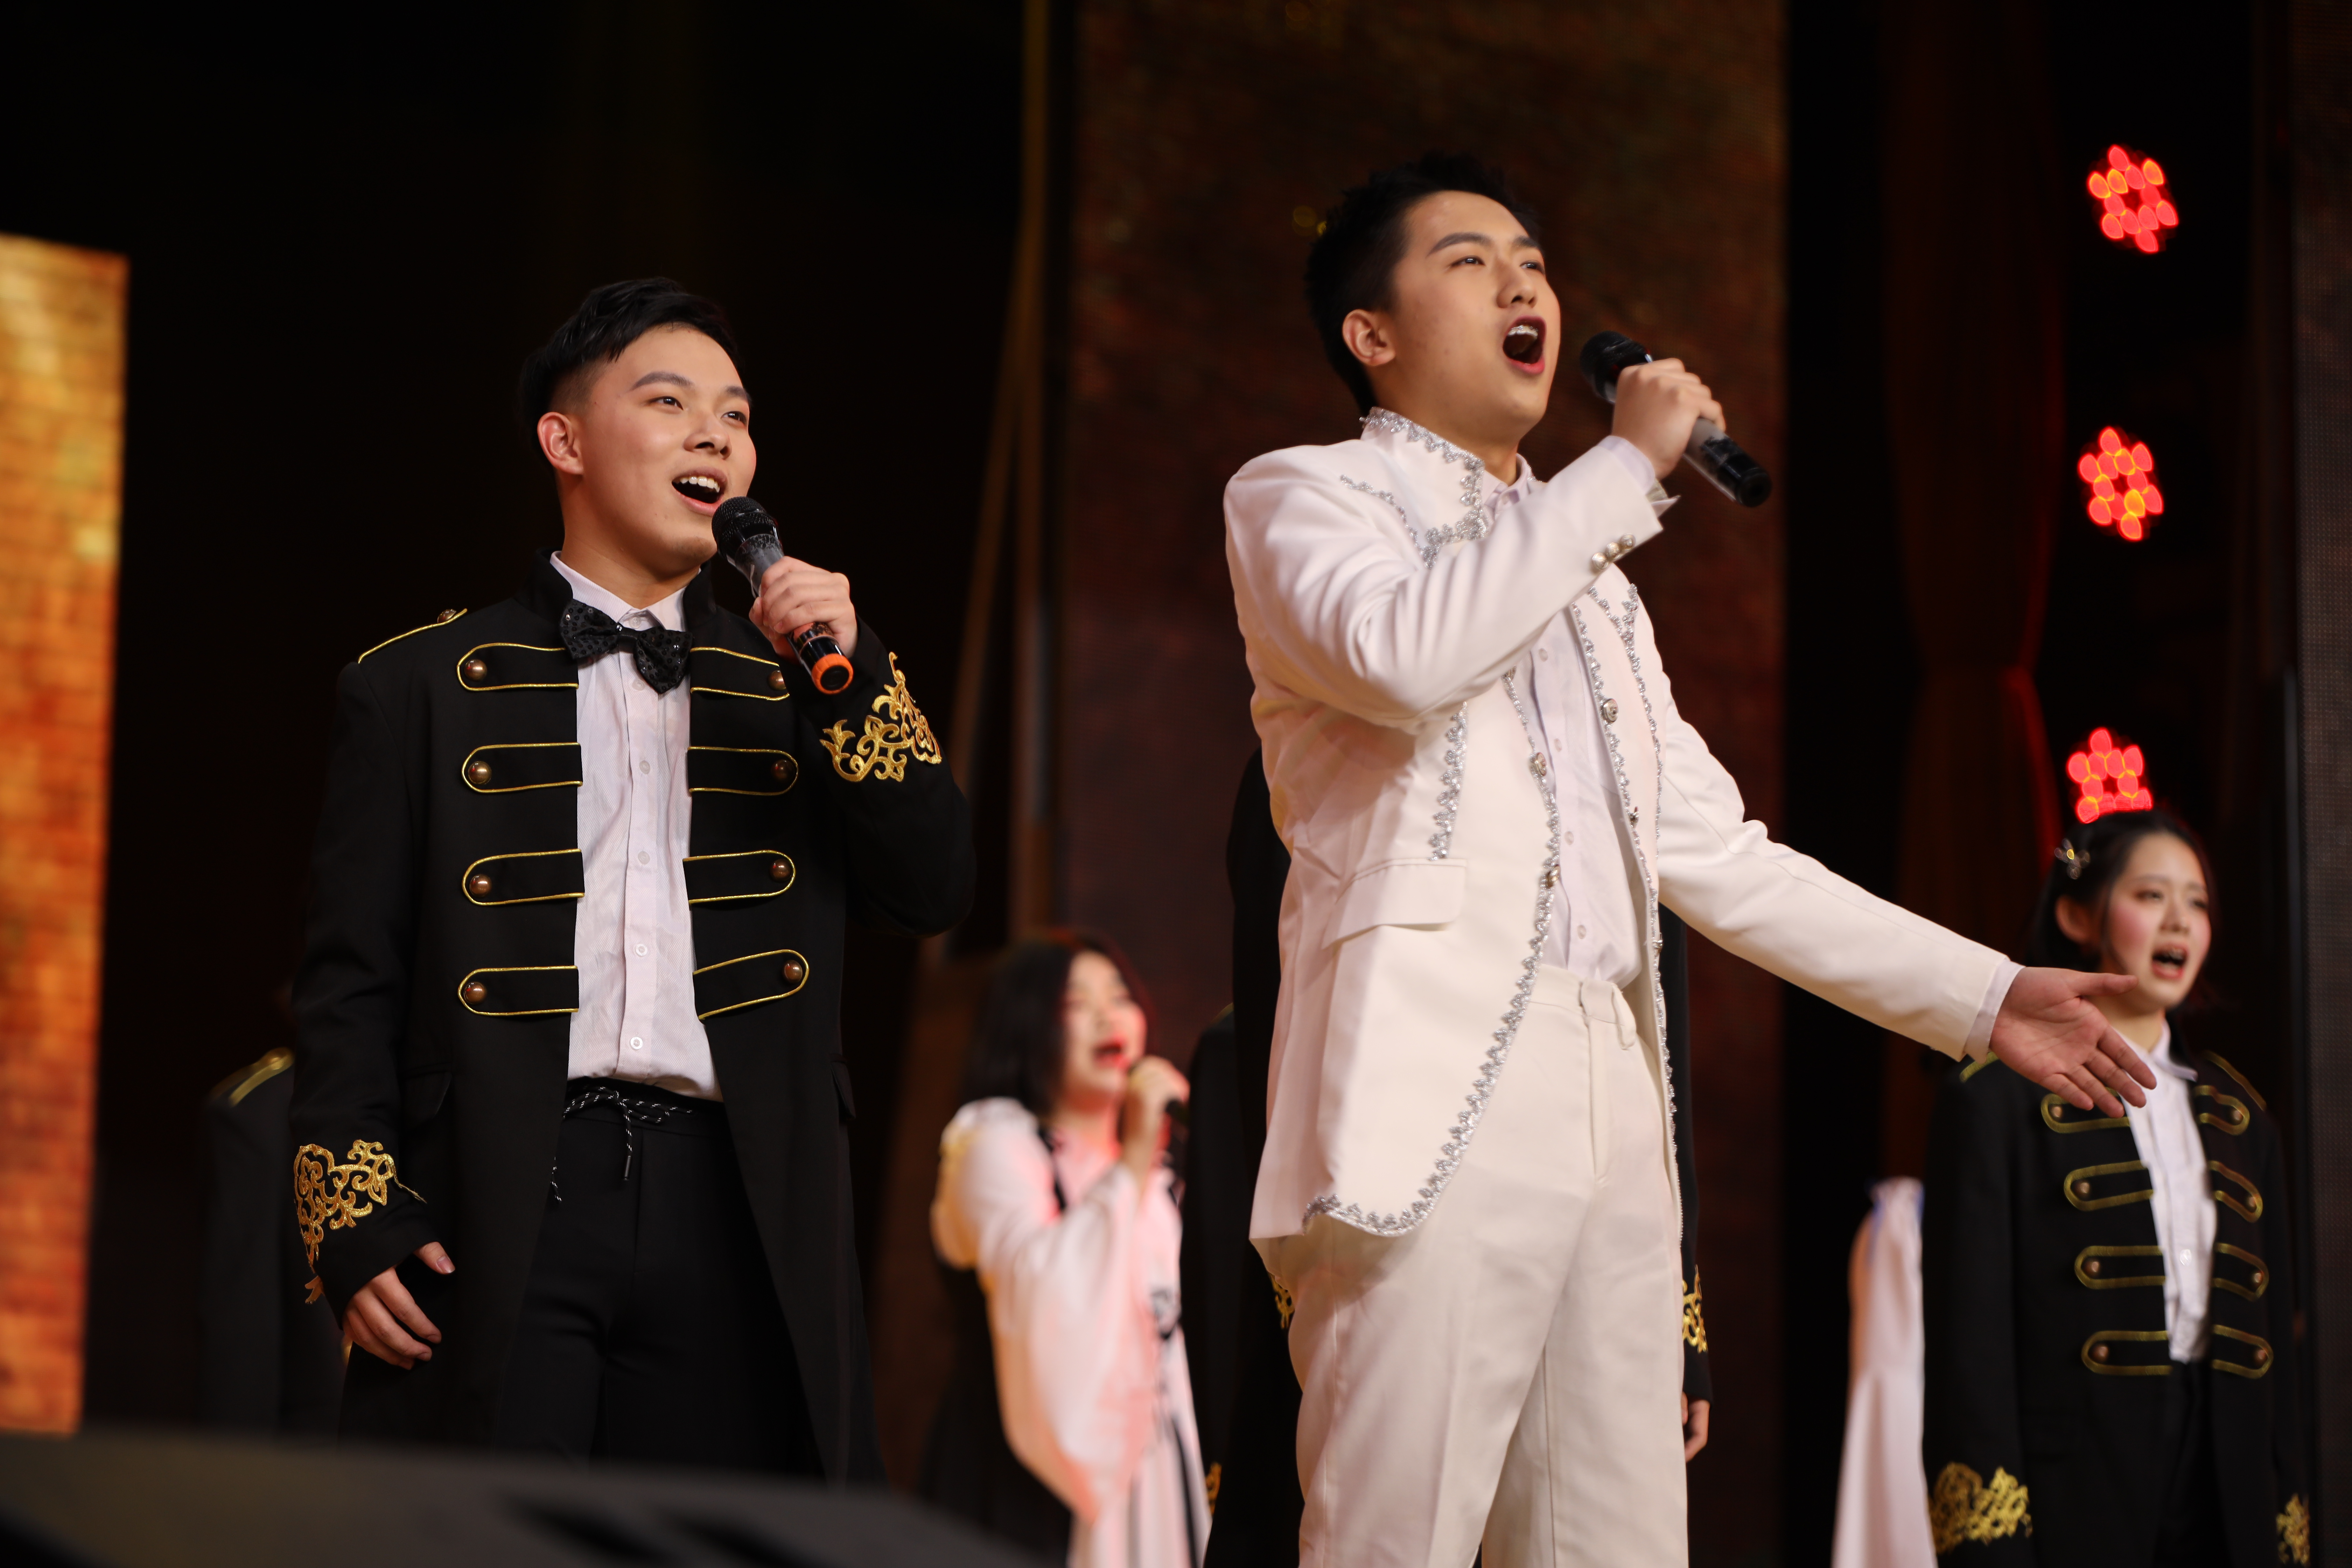 吴景天（左一）参加参加长郡中学国际部艺术节表演音乐剧《汉密尔顿》的表演。